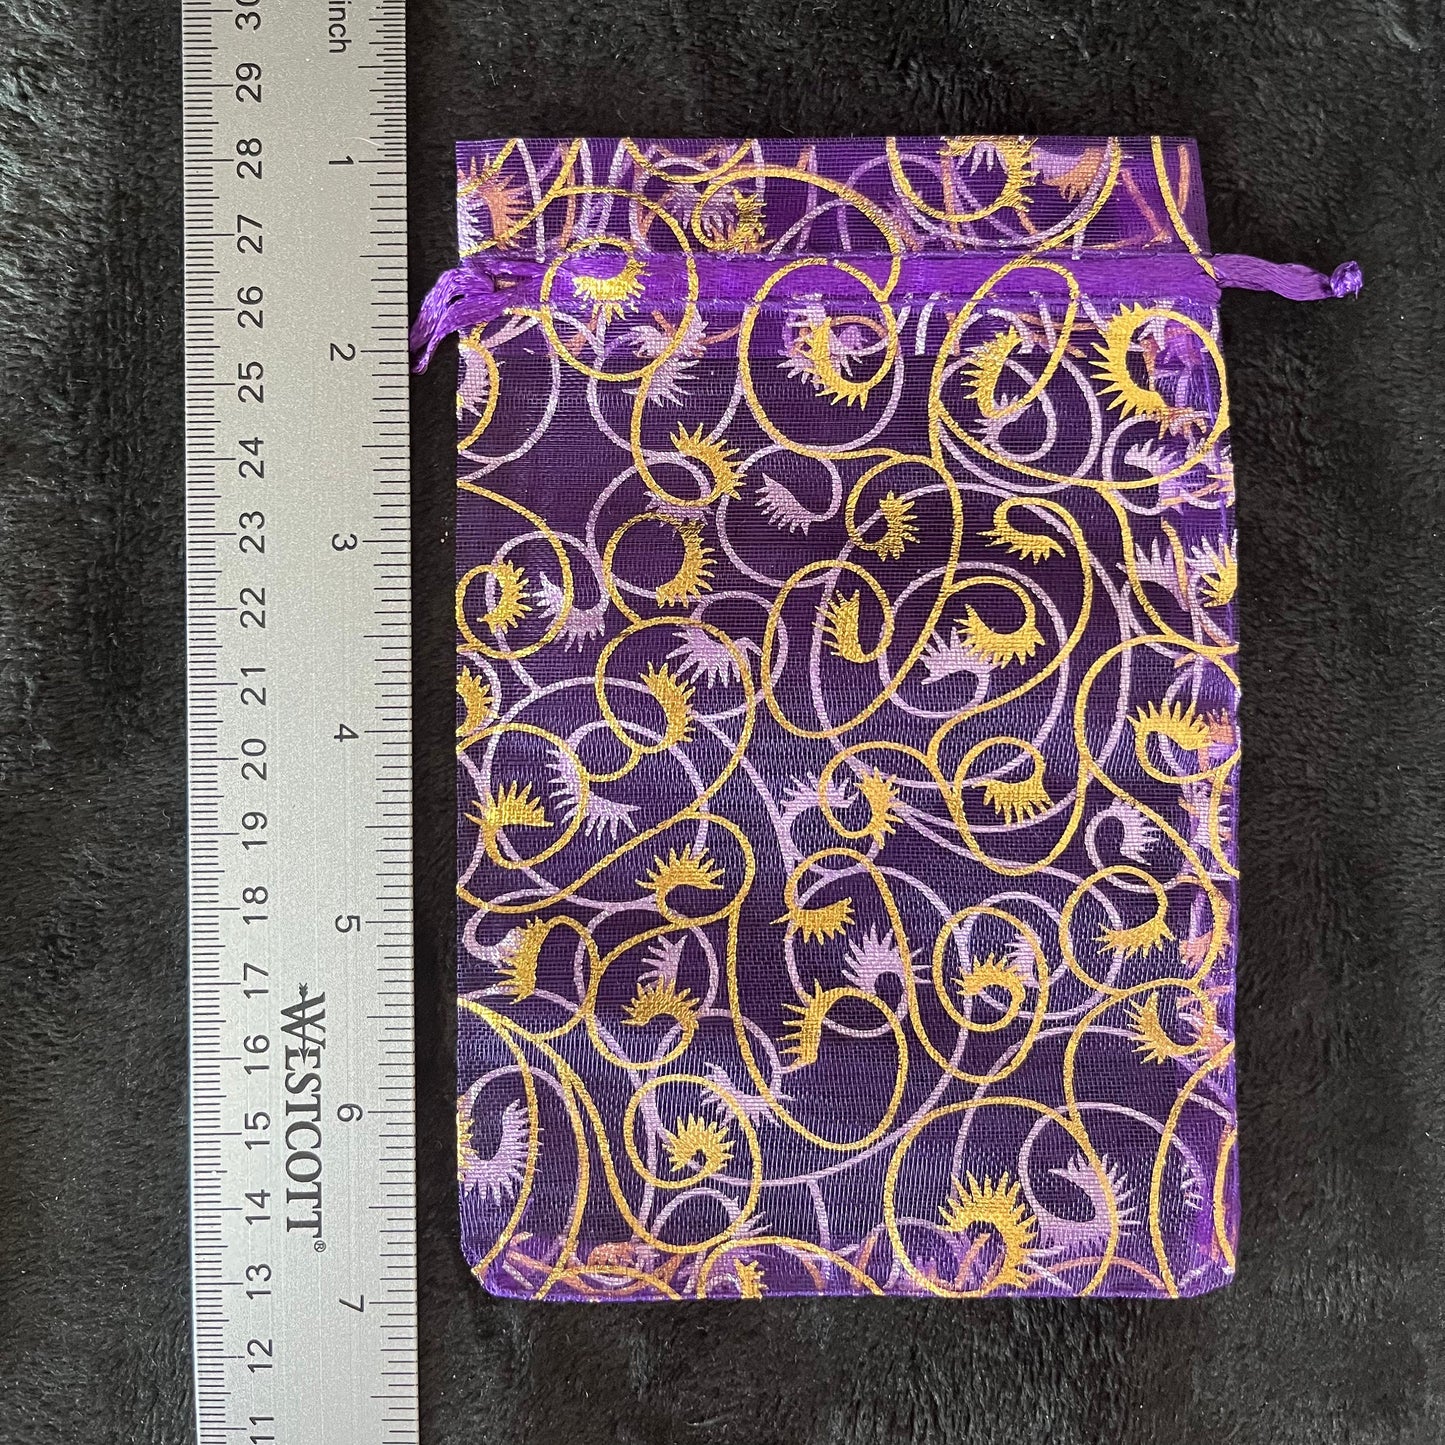 Purple Metallic Swirl Organza Bag (Approx. 4” x 6") BAG-0087